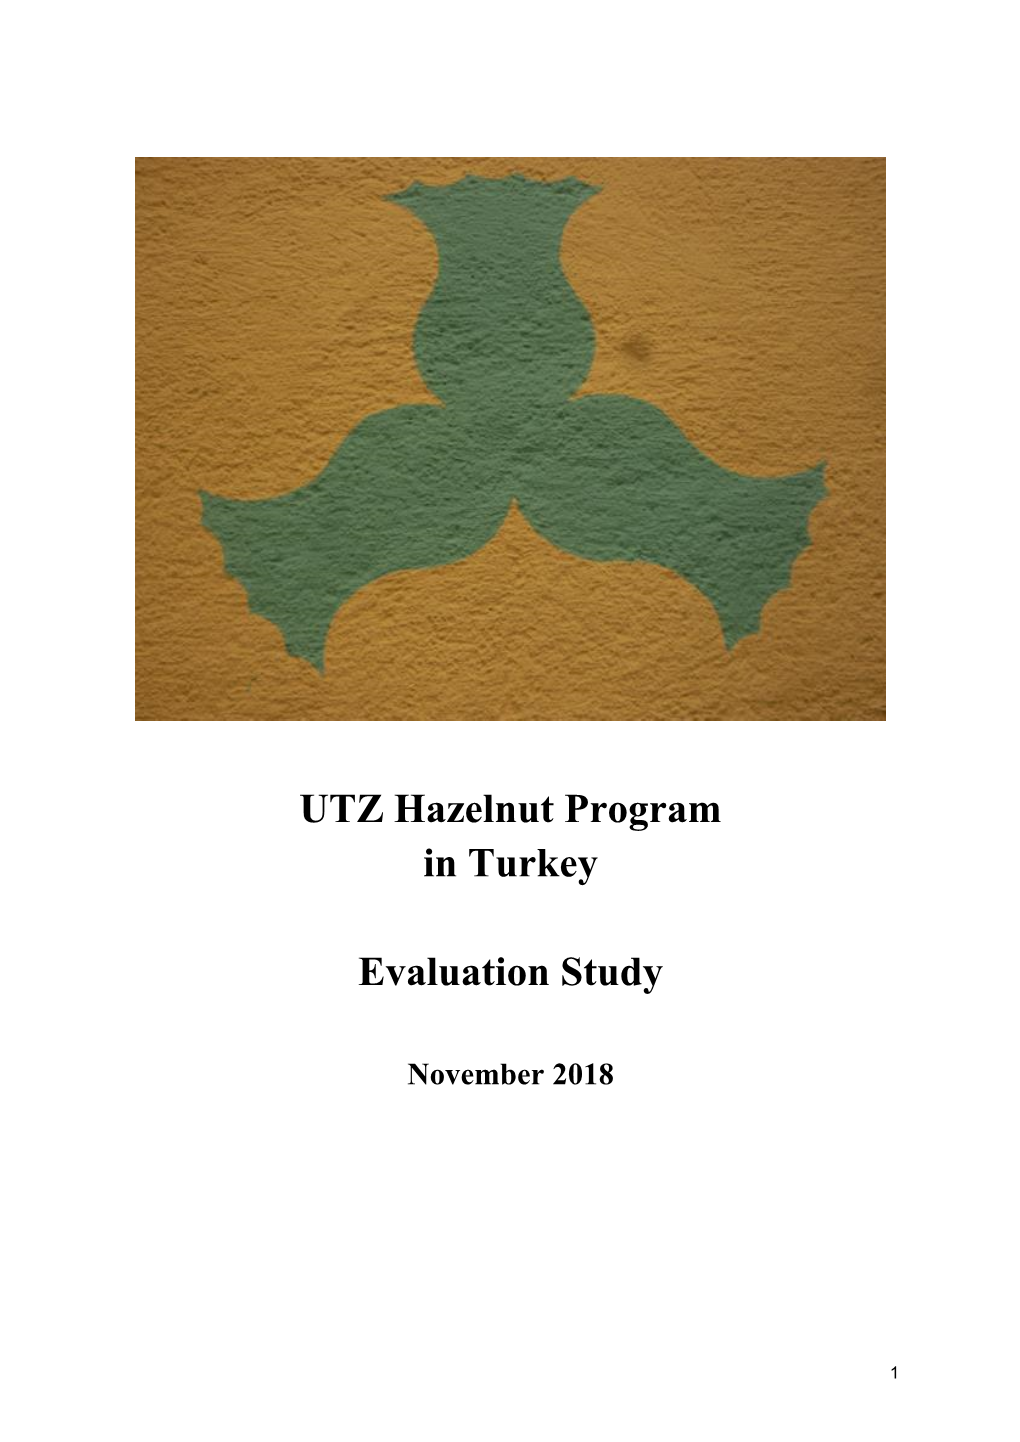 UTZ Hazelnut Program in Turkey Evaluation Study